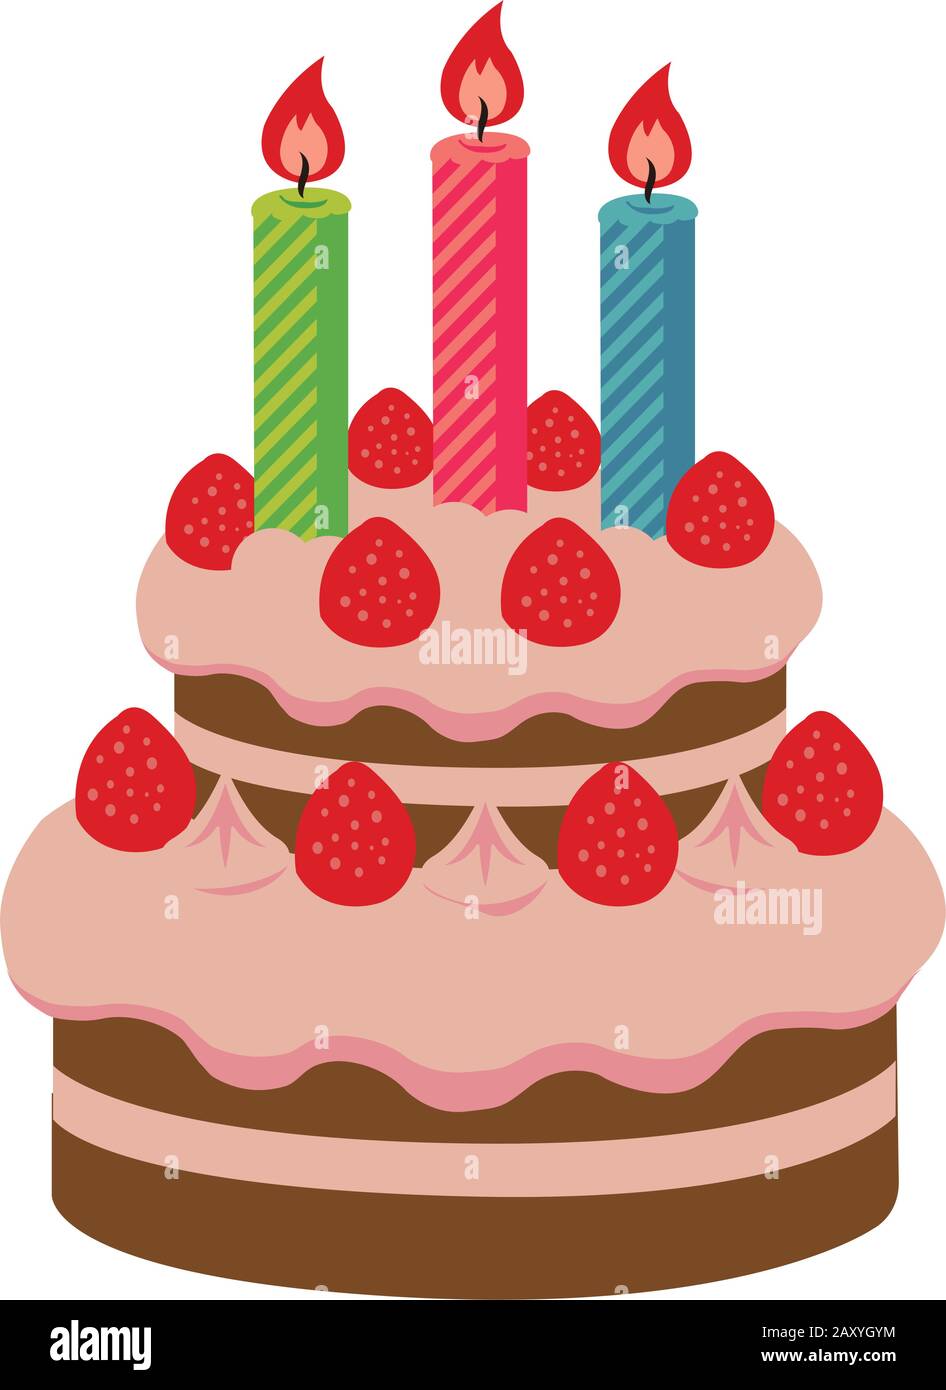 Imagen De La Torta De Cumpleaños Por 2 Años Ilustración del Vector -  Ilustración de arte, dulce: 103922053